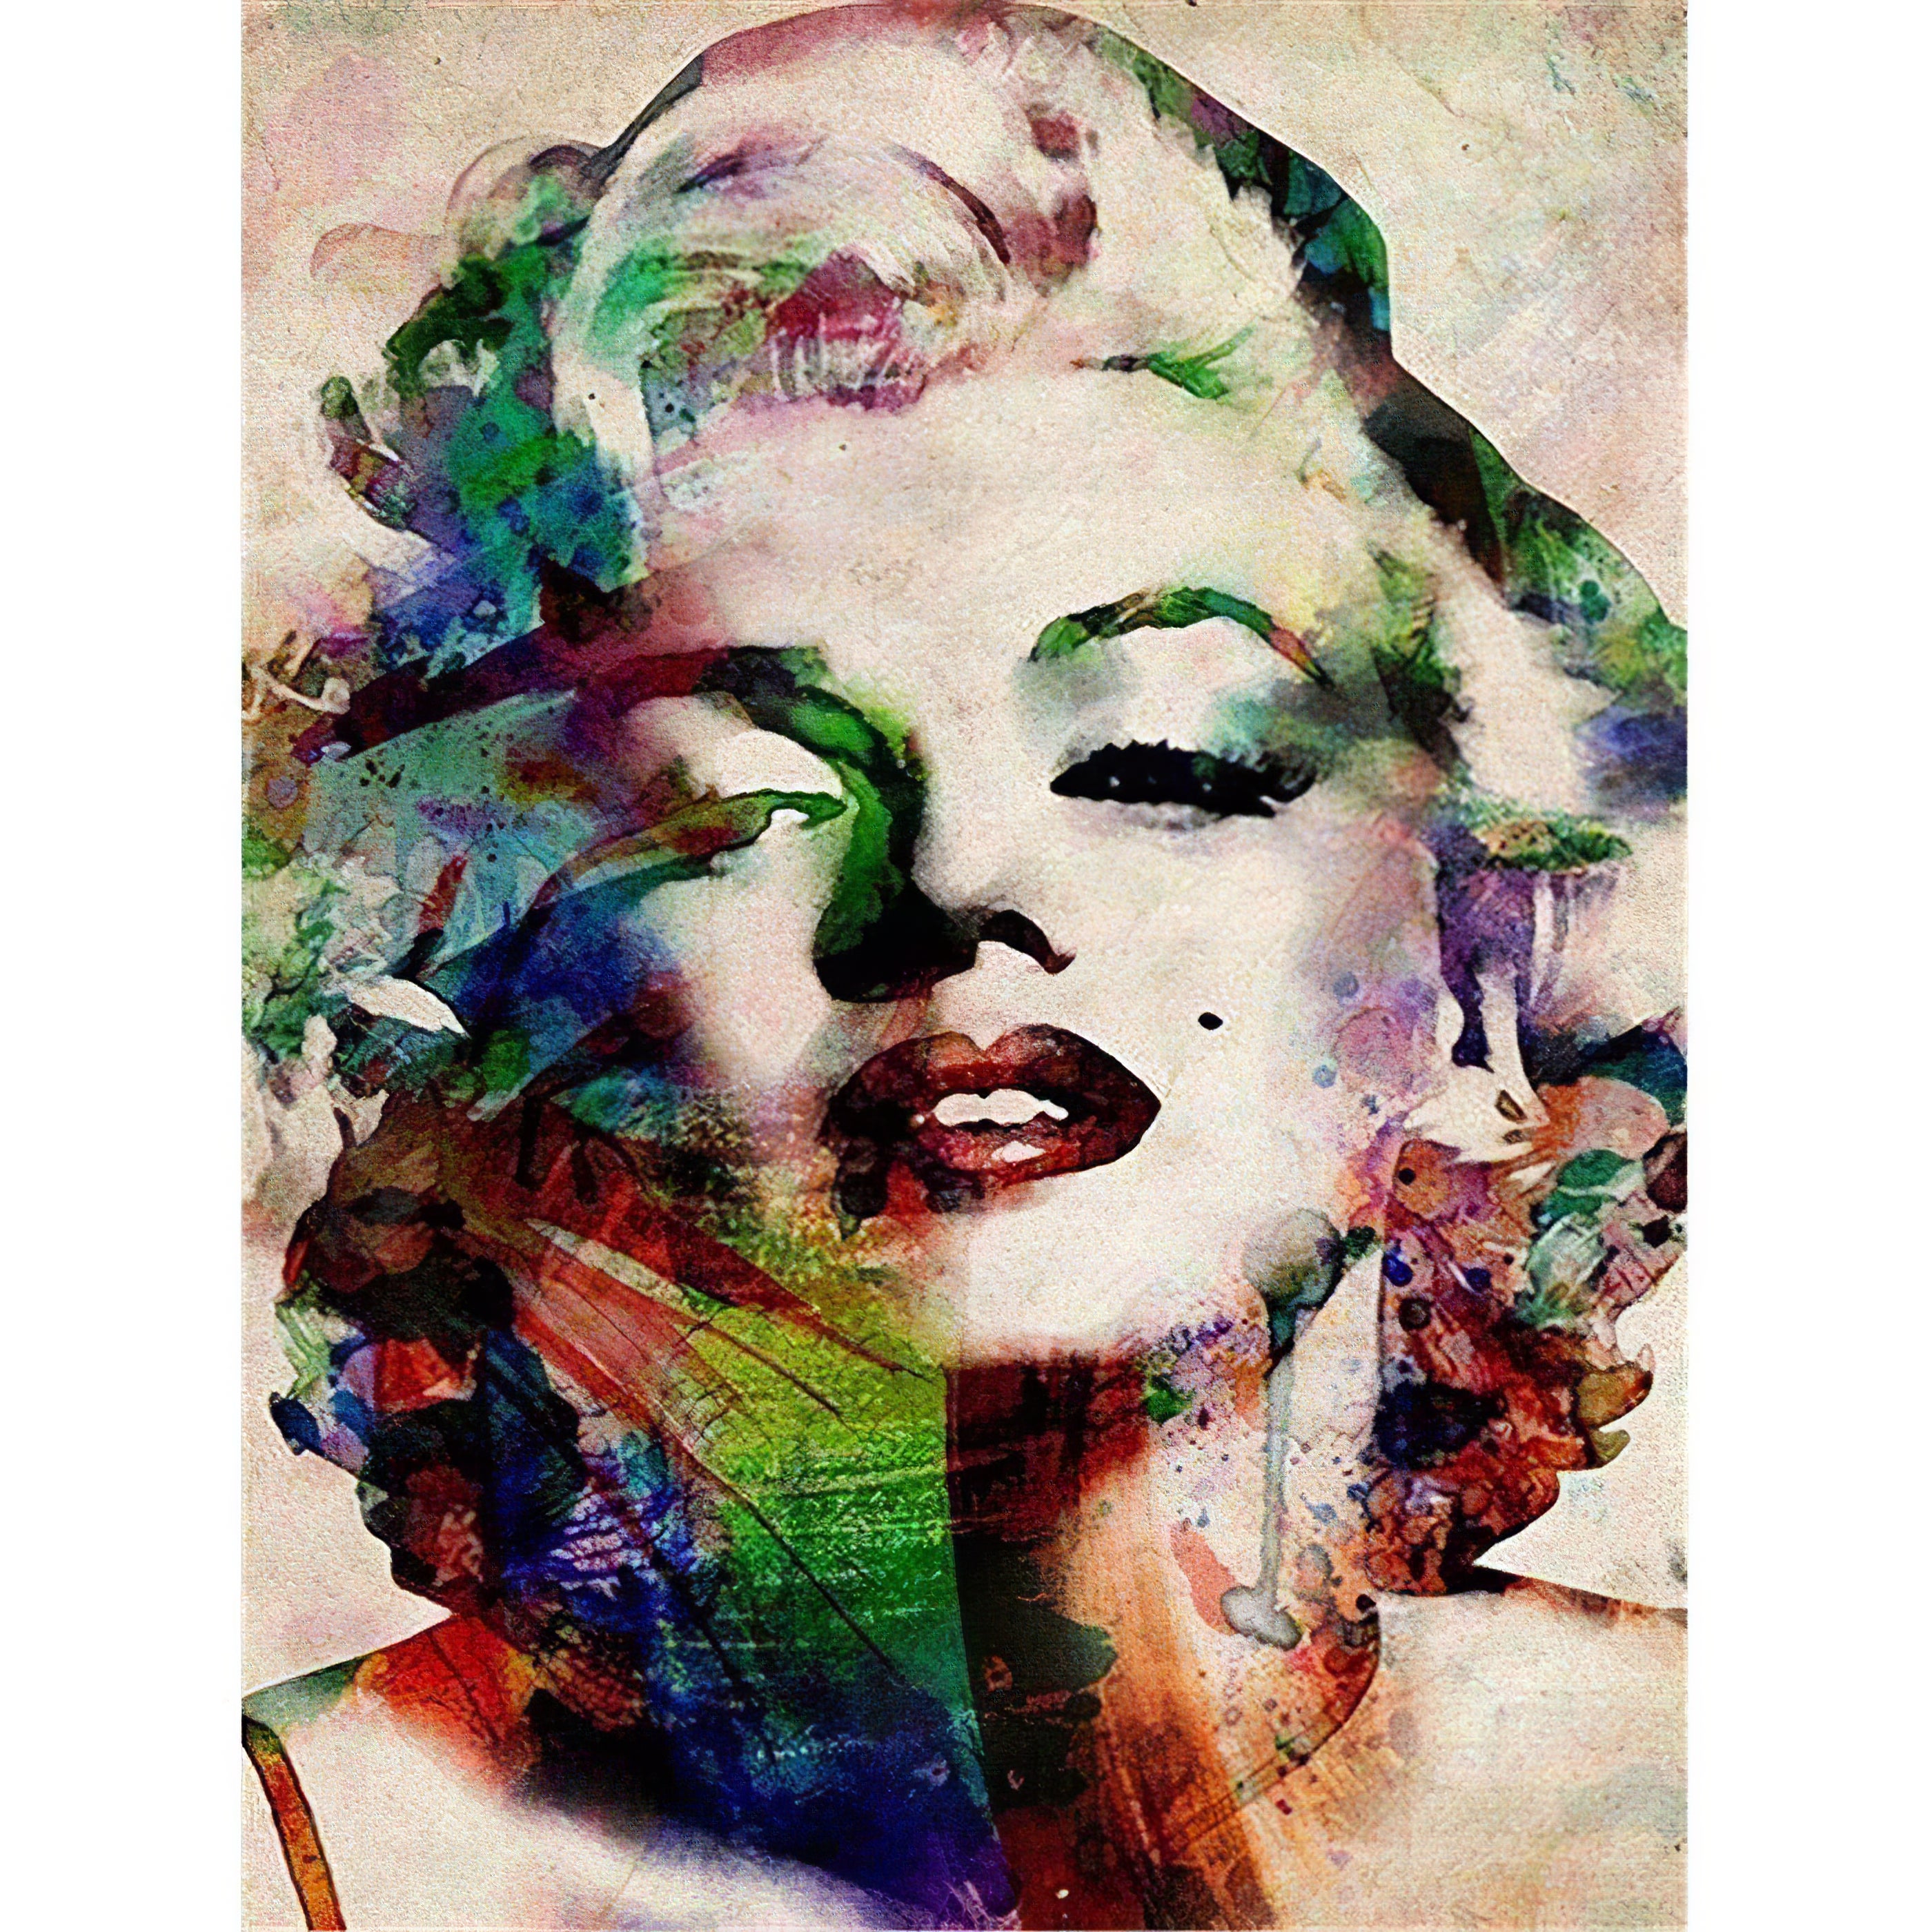 Le visage merveilleux de Marilyn Monroe